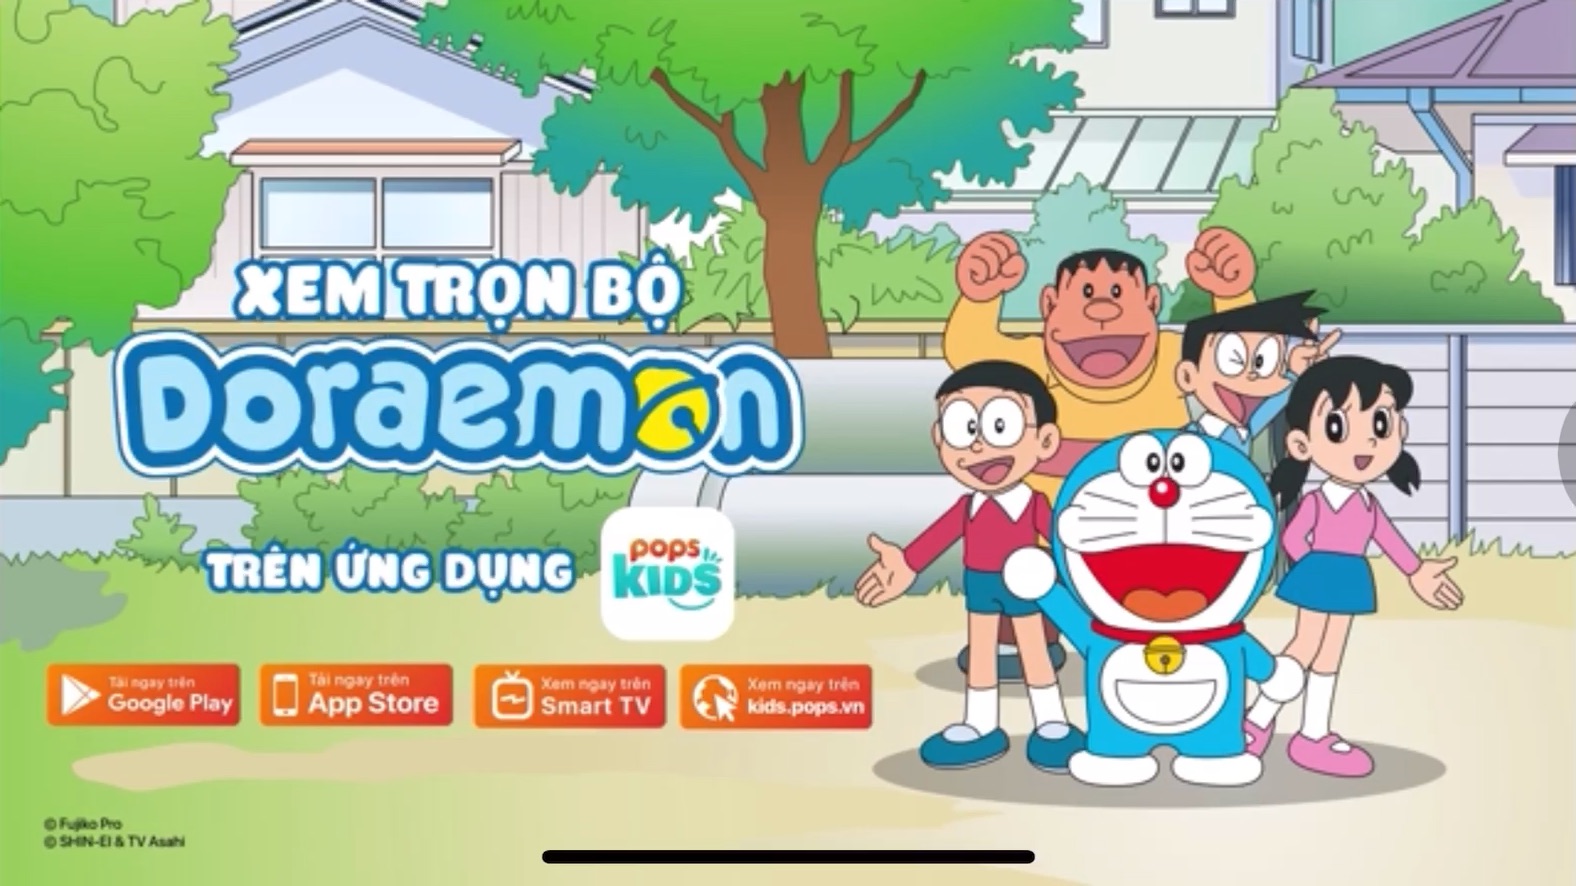 Doraemon Tiếng Việt: Bạn là fan cuồng của Doraemon và muốn tìm hiểu tất cả những thông tin về em nó? Hãy xem ngay những tập phim Doraemon phiên bản Tiếng Việt đáng yêu và thú vị này. Với cái nhìn mới lạ và gần gũi hơn, bạn sẽ hiểu thêm nhiều điều thú vị về thế giới của chú mèo máy thông minh đáng yêu này.